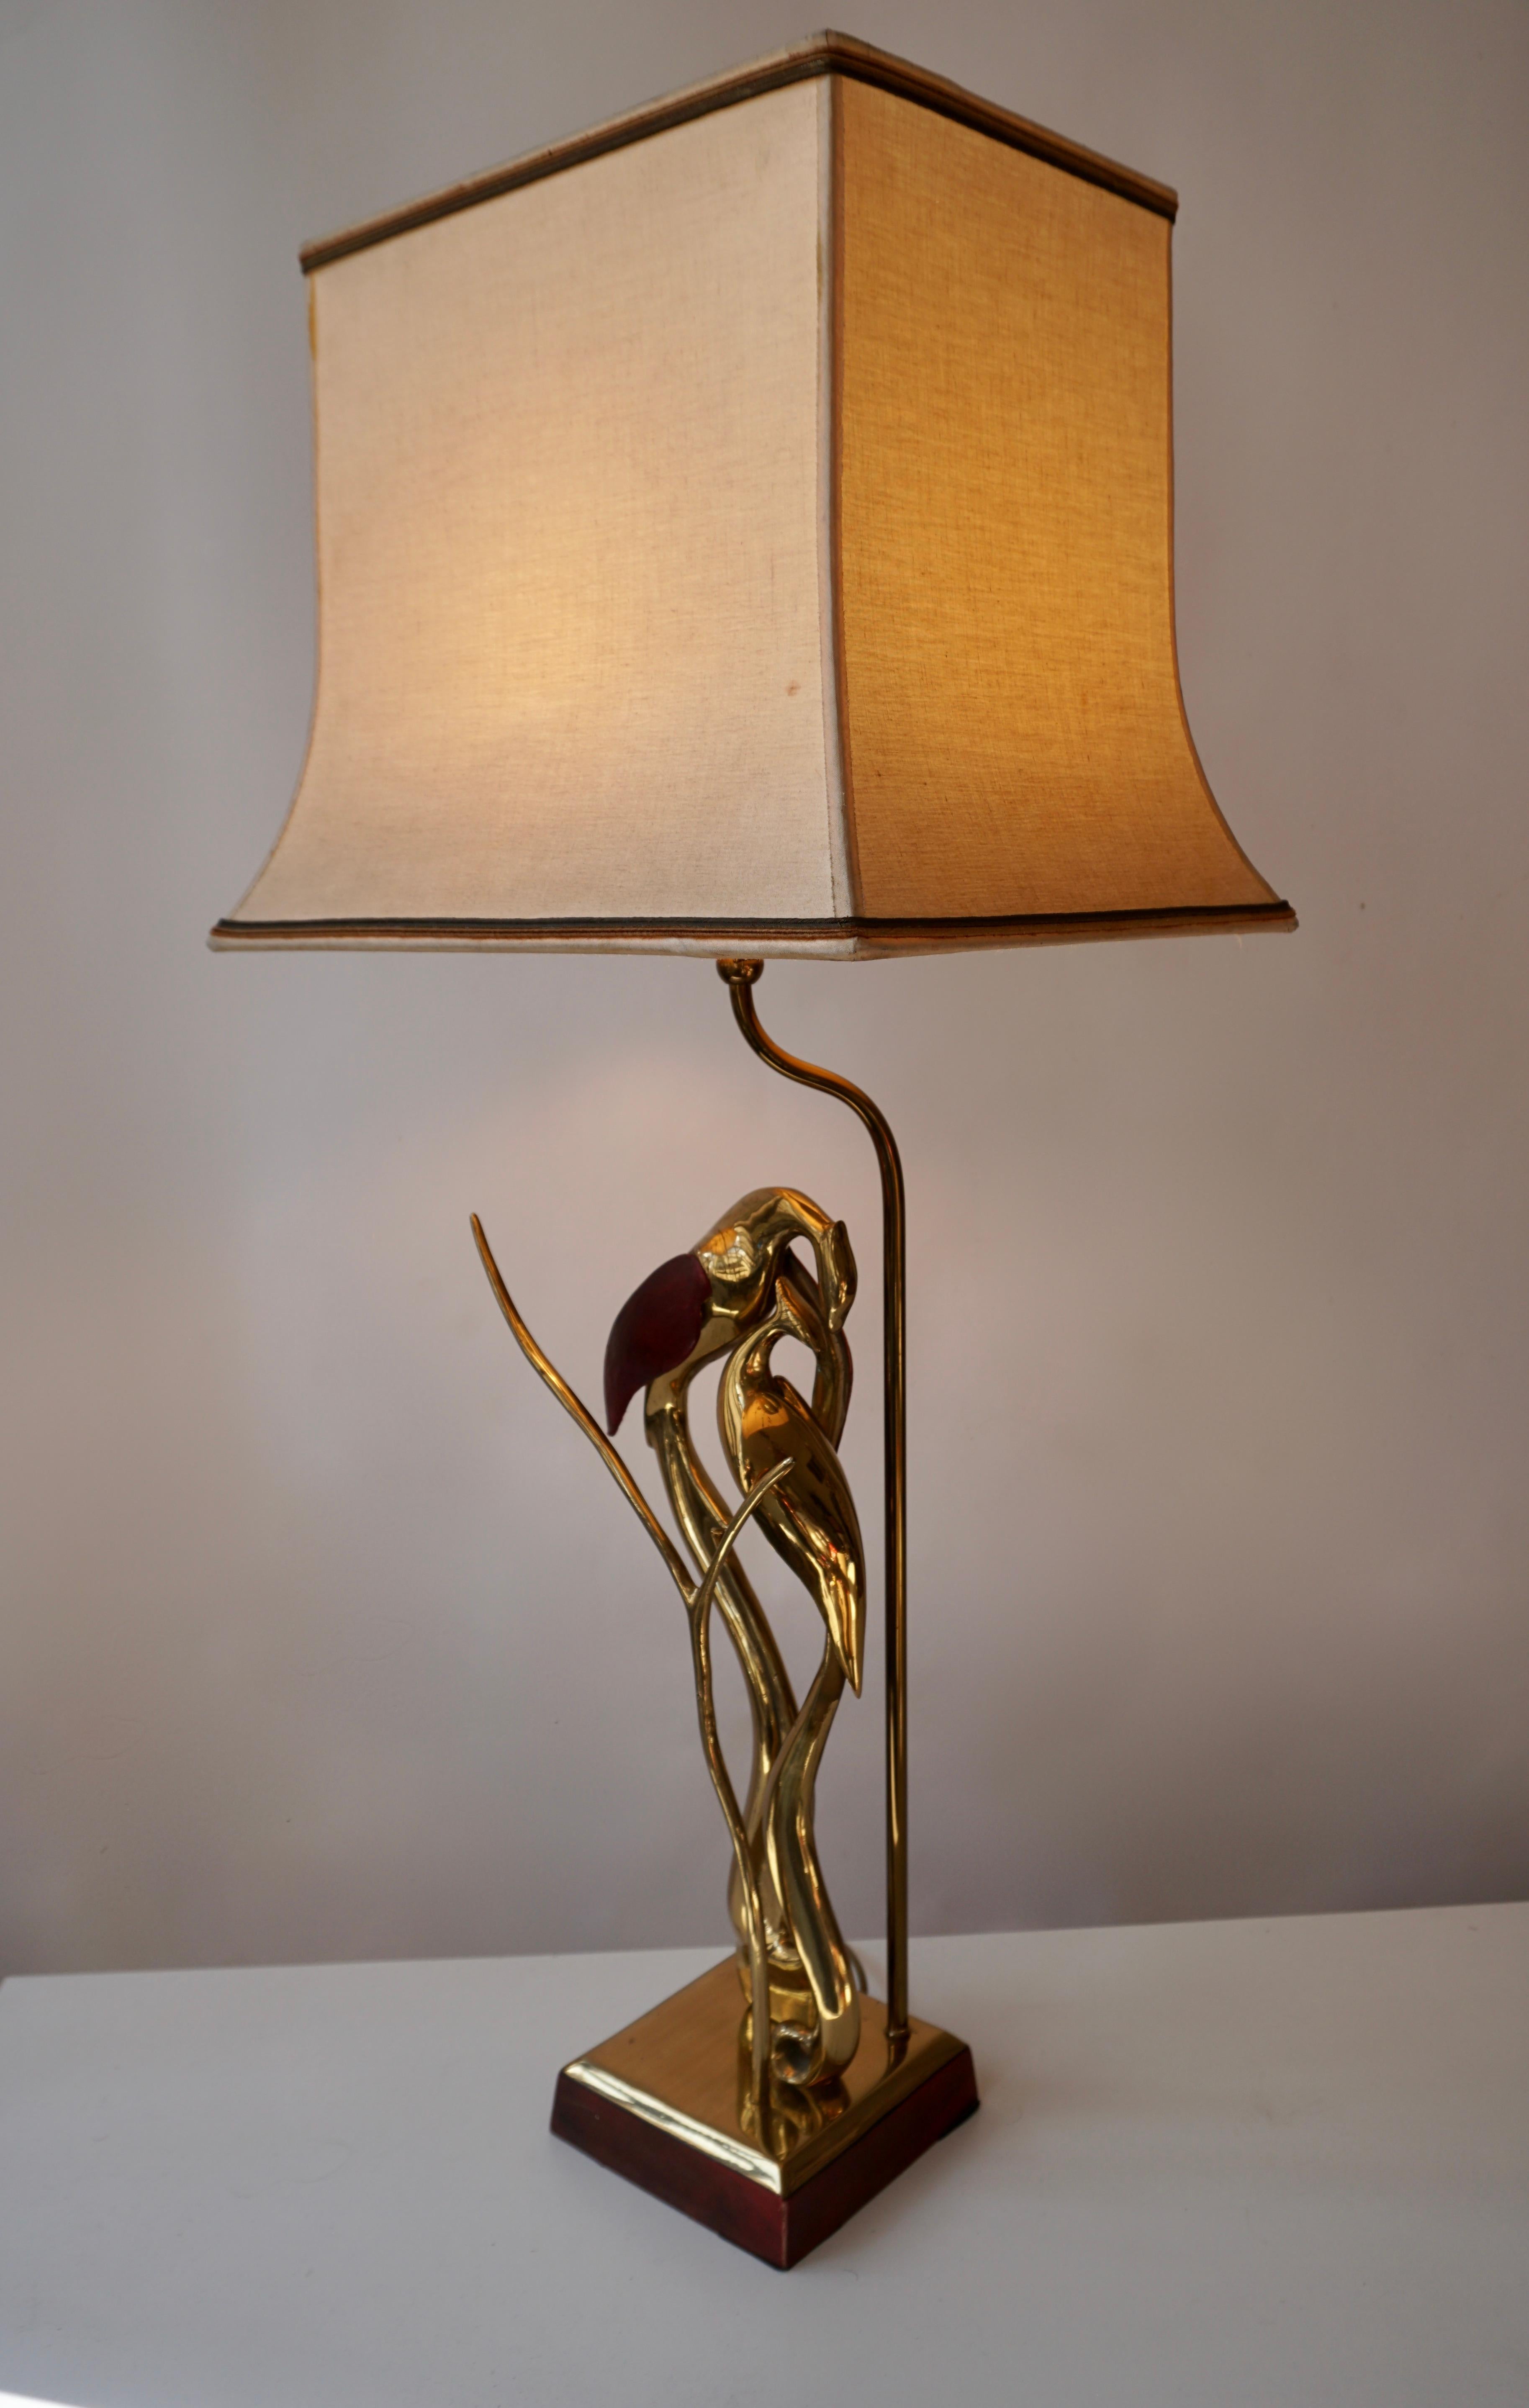 Cette belle lampe sculpturale en forme d'oiseau est faite de laiton avec des ailes en cuir, vers 1970.
Mesures : Hauteur 82 cm.
Largeur 35 cm.
Profondeur 28 cm.